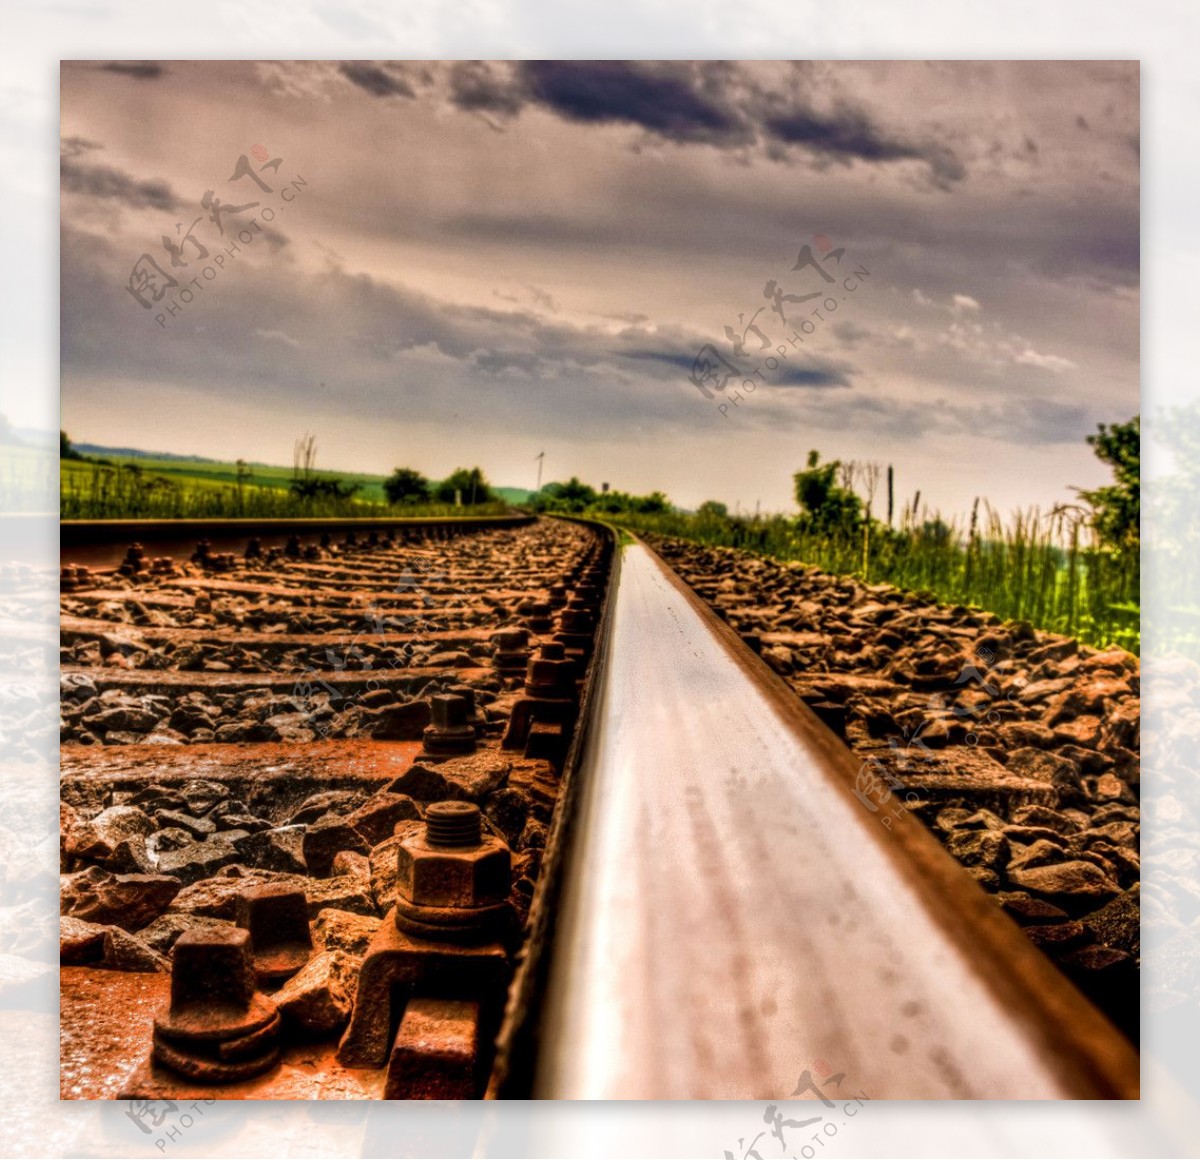 【美图分享39】铁路轨道意境摄影~~记忆像铁轨一样漫长 - 哔哩哔哩